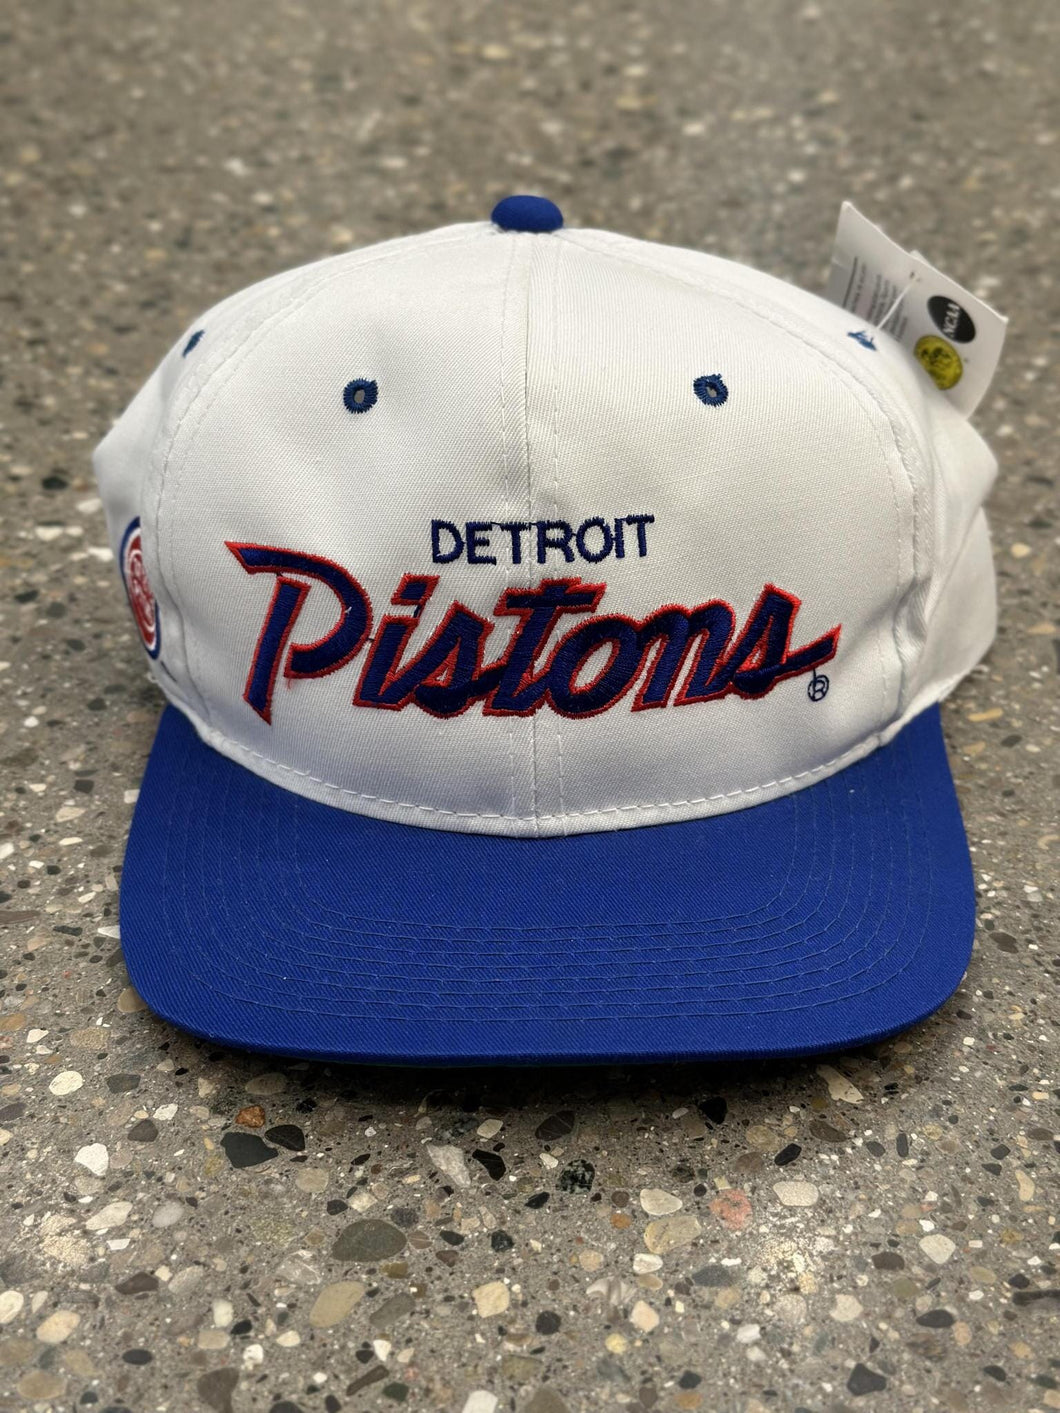 Detroit Pistons Vintage OG Royal Red Script Snapback White Blue ABC Vintage 